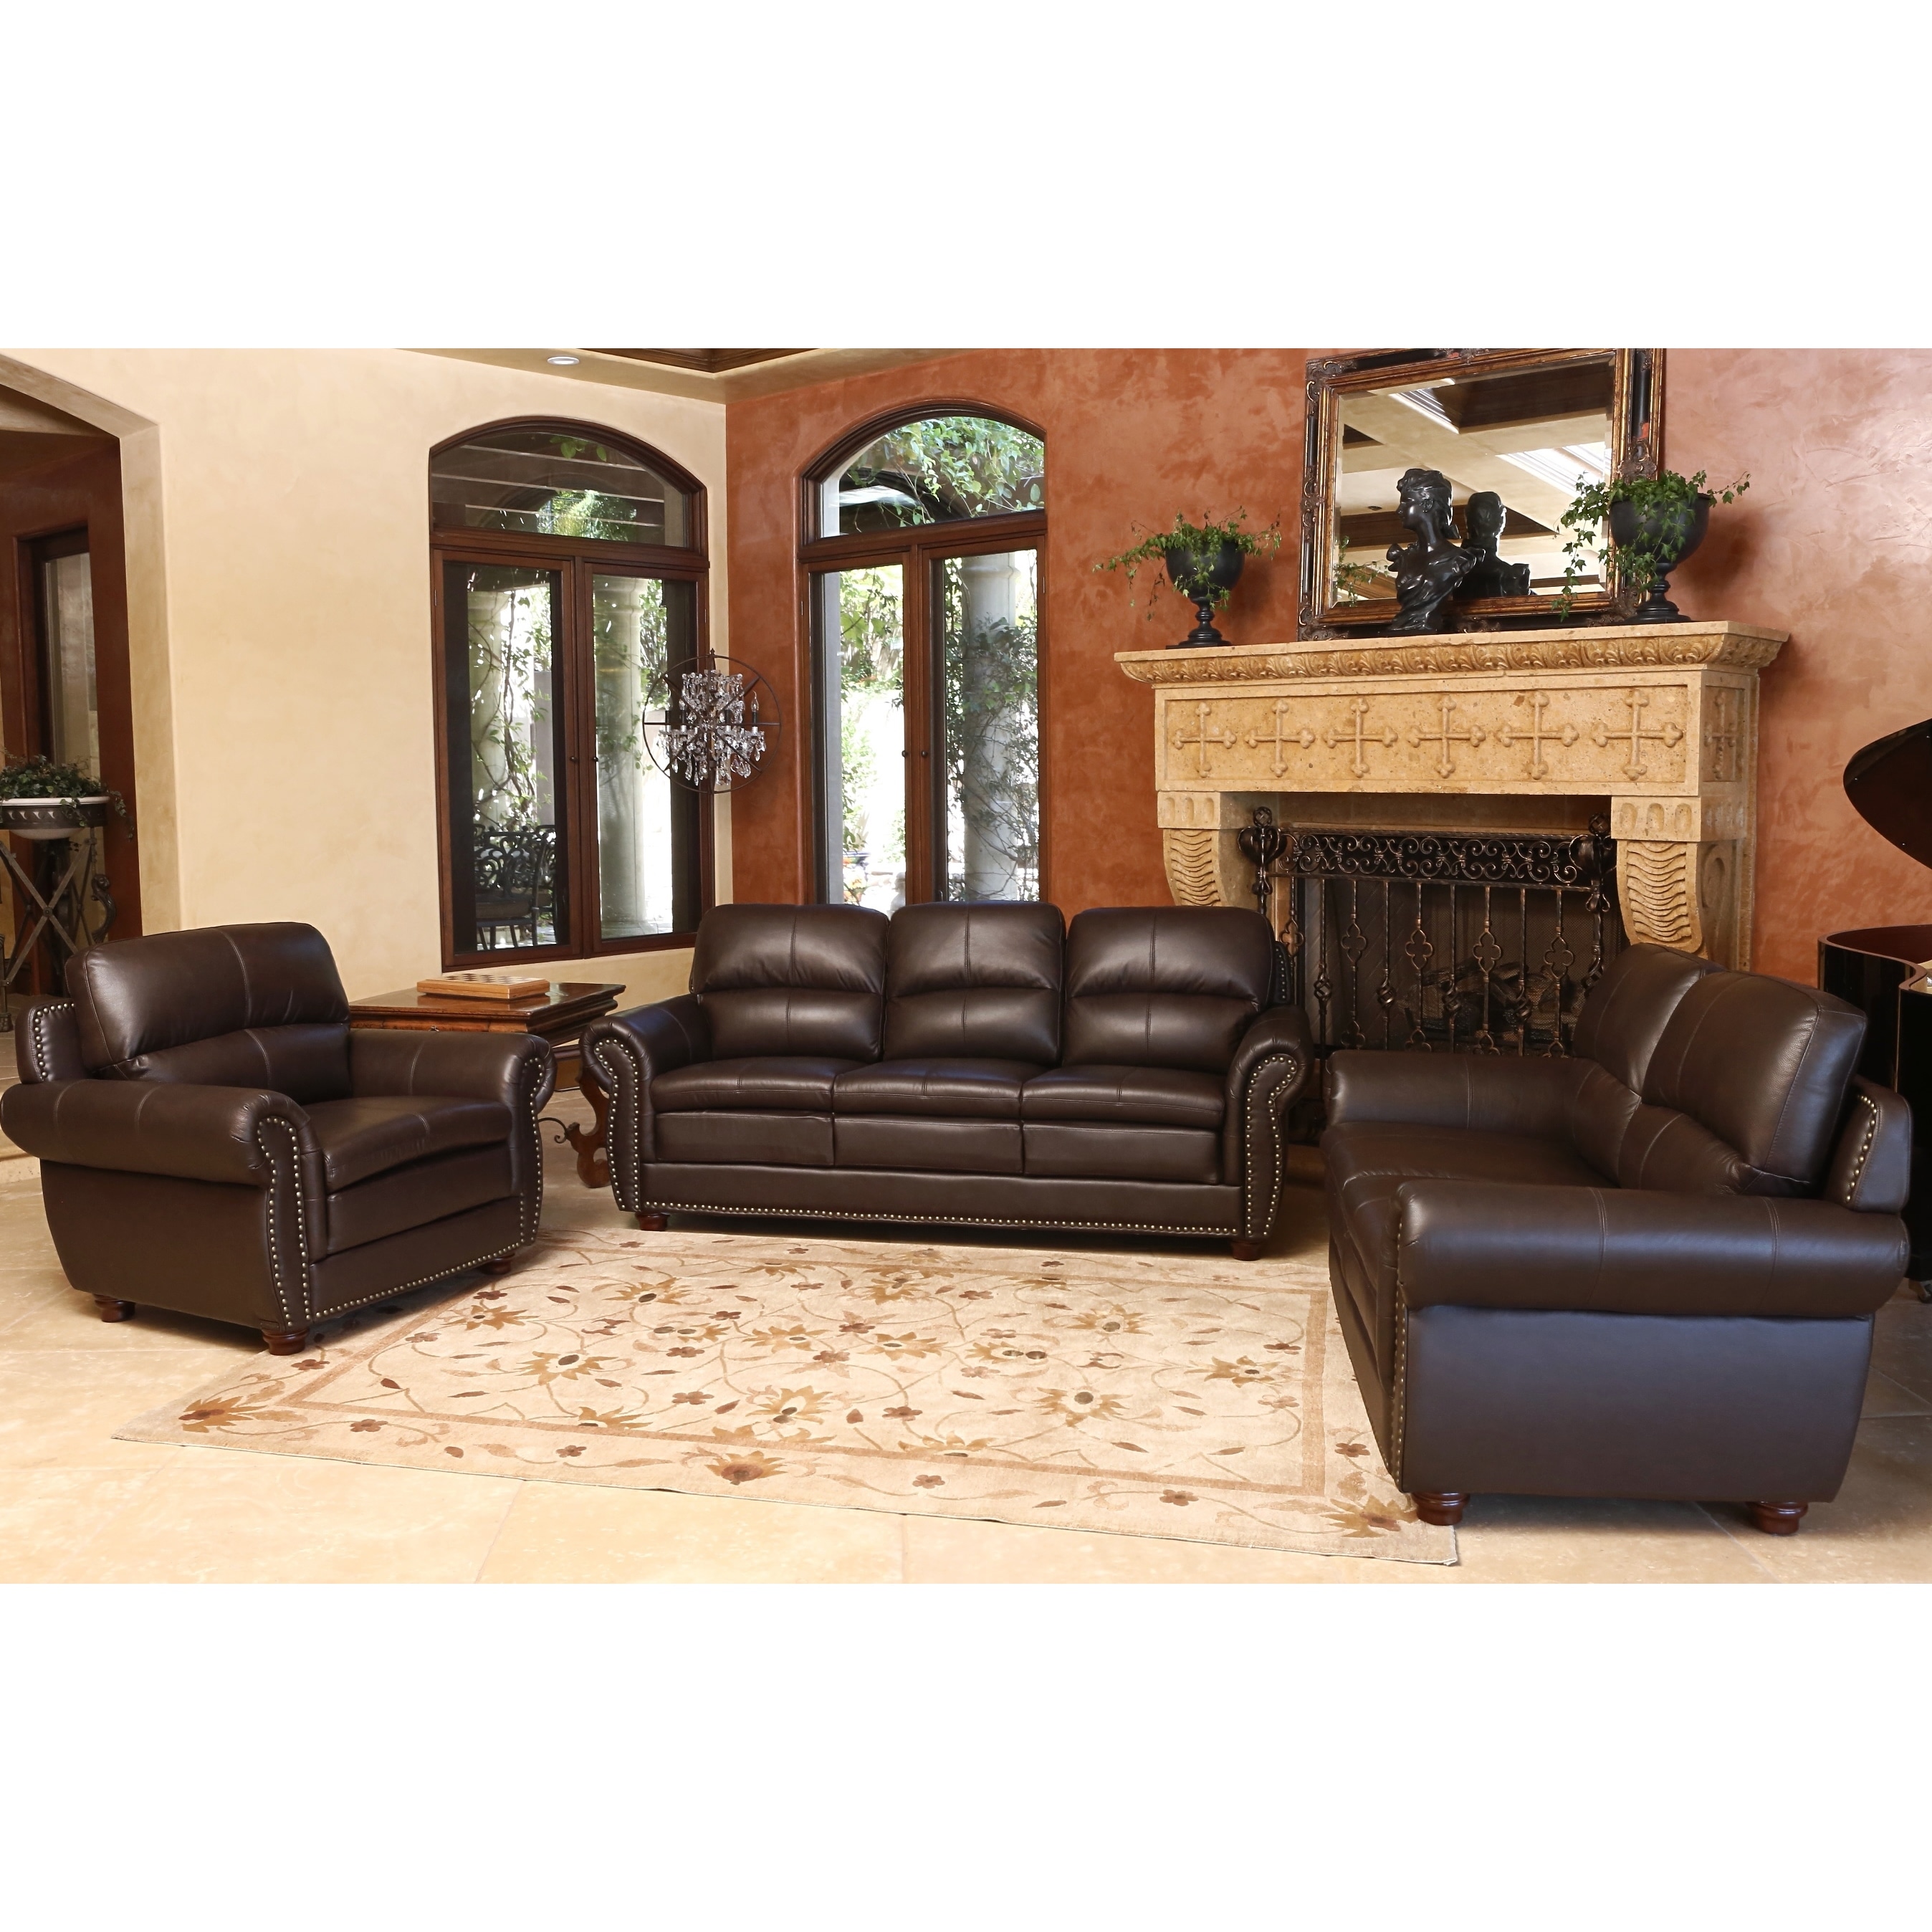 best black covered modern sofas